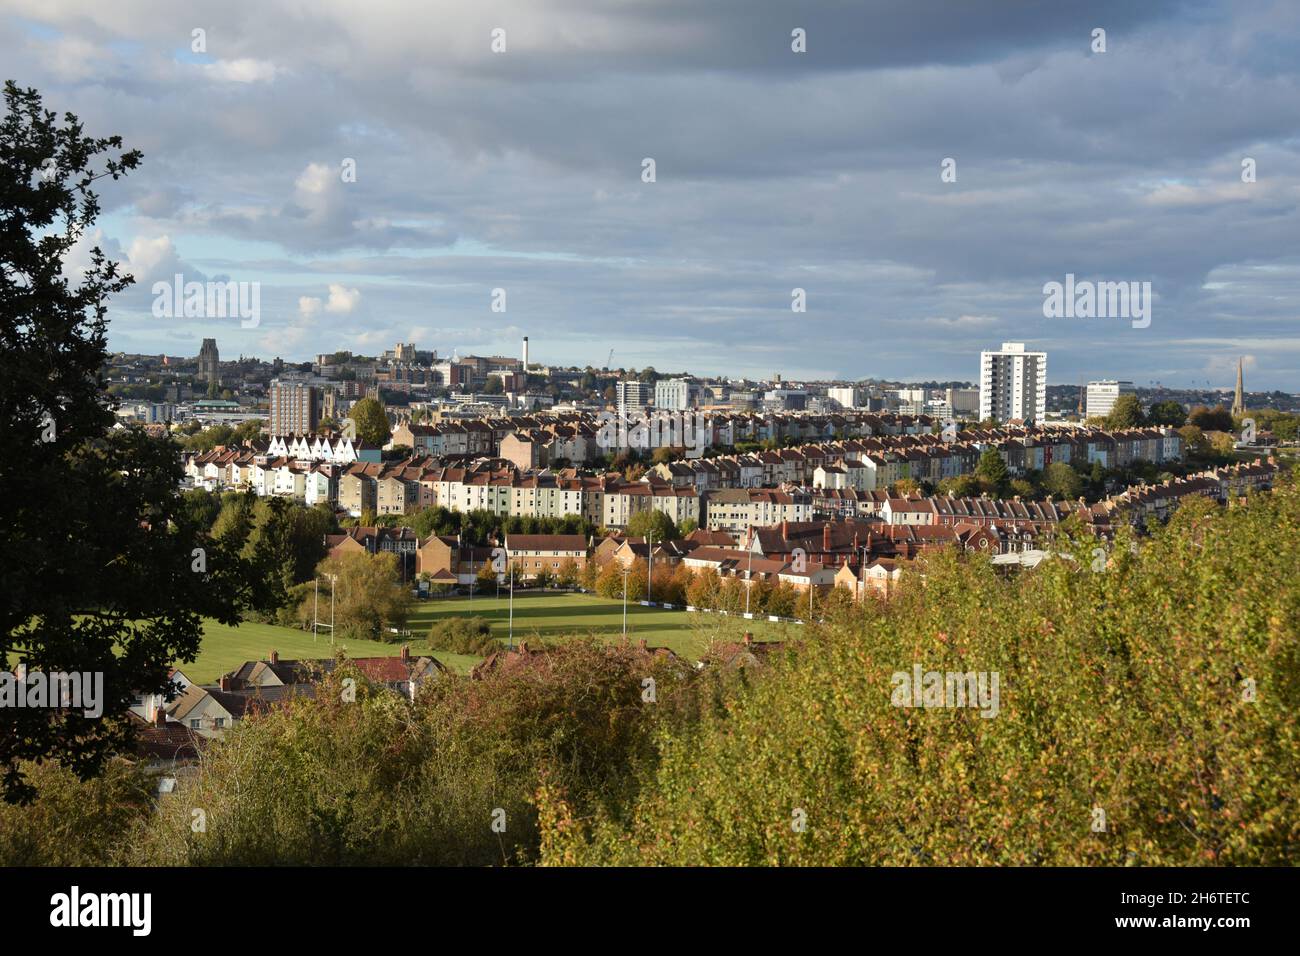 Paisaje urbano de Bristol visto desde la reserva natural de las laderas del norte. Terrazas suburbanas en primer plano con el horizonte del centro de la ciudad en el horizonte Foto de stock